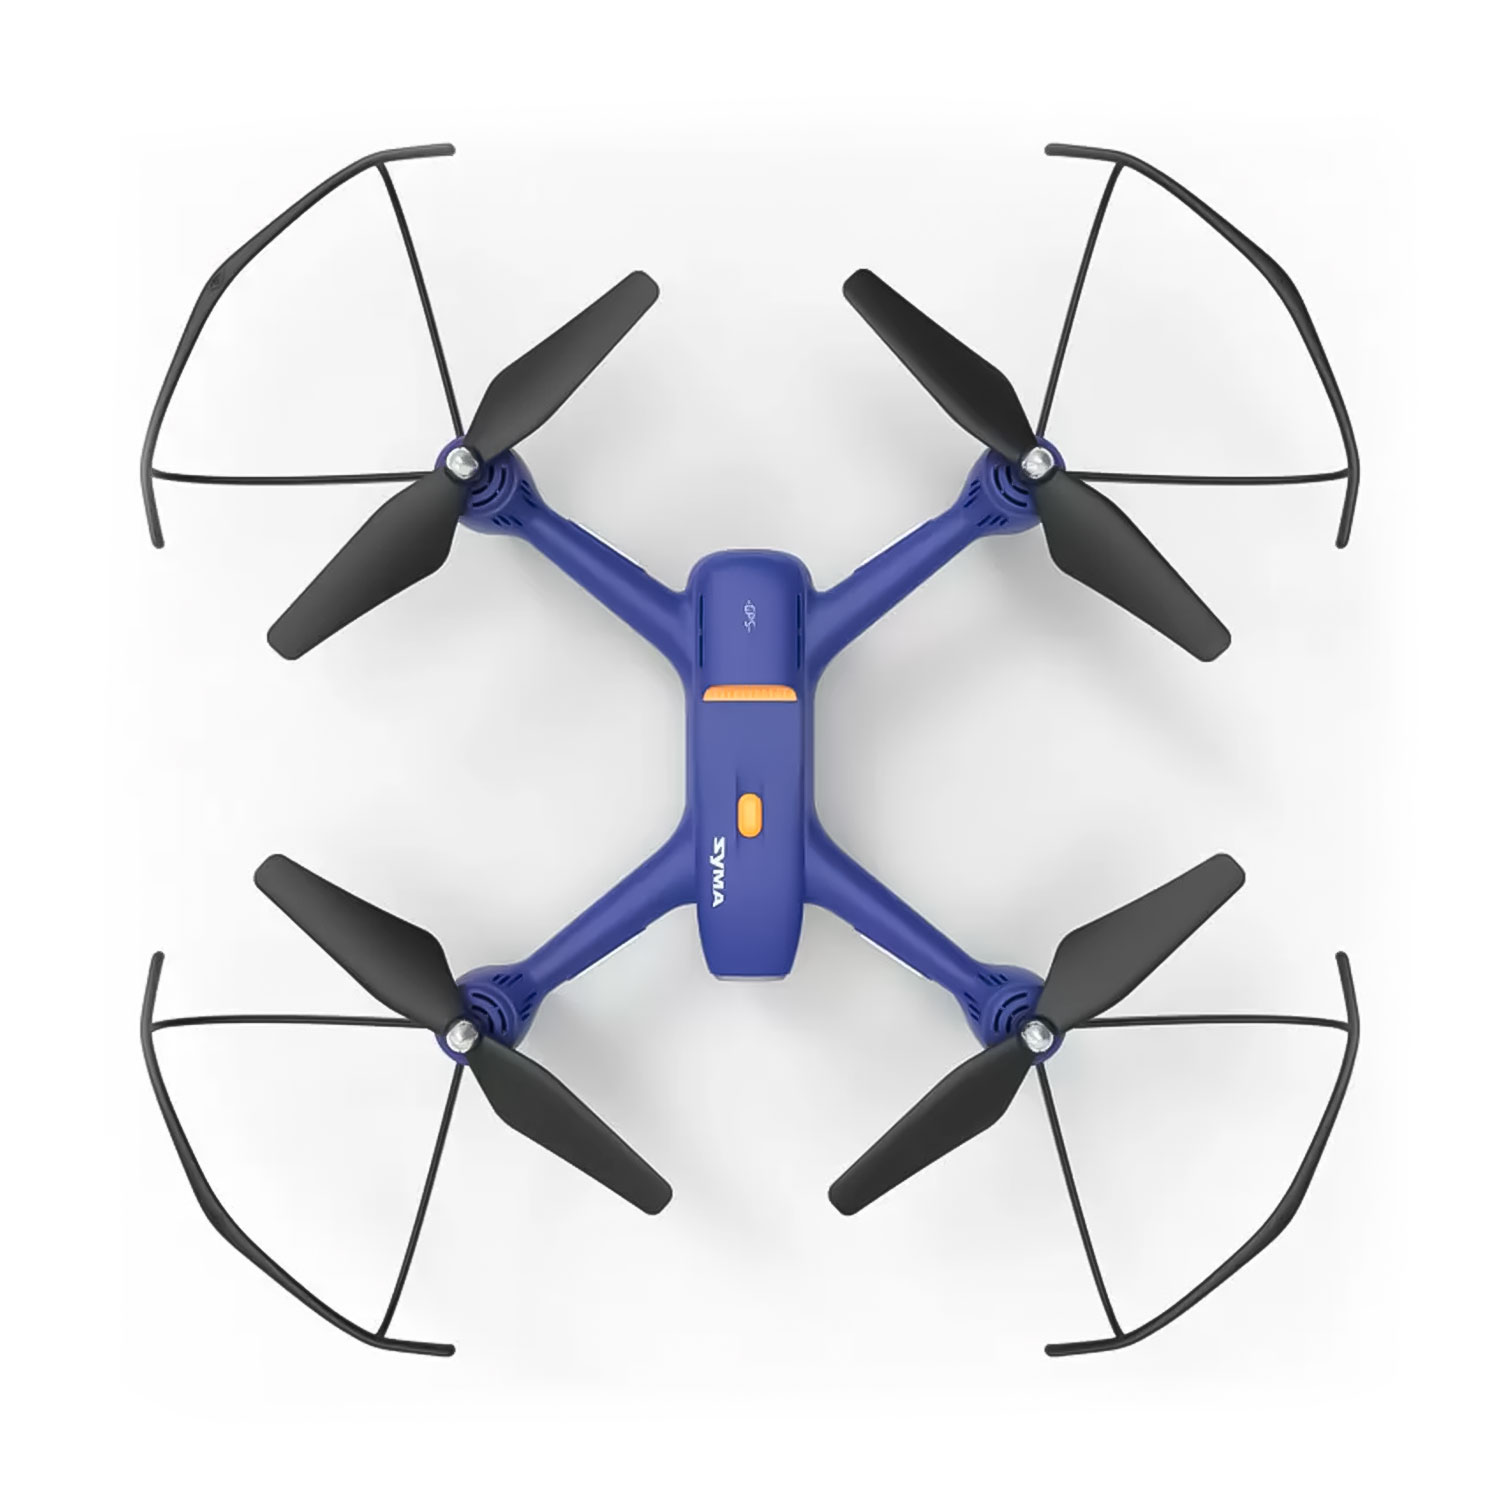 Drone Syma X31 - Azul